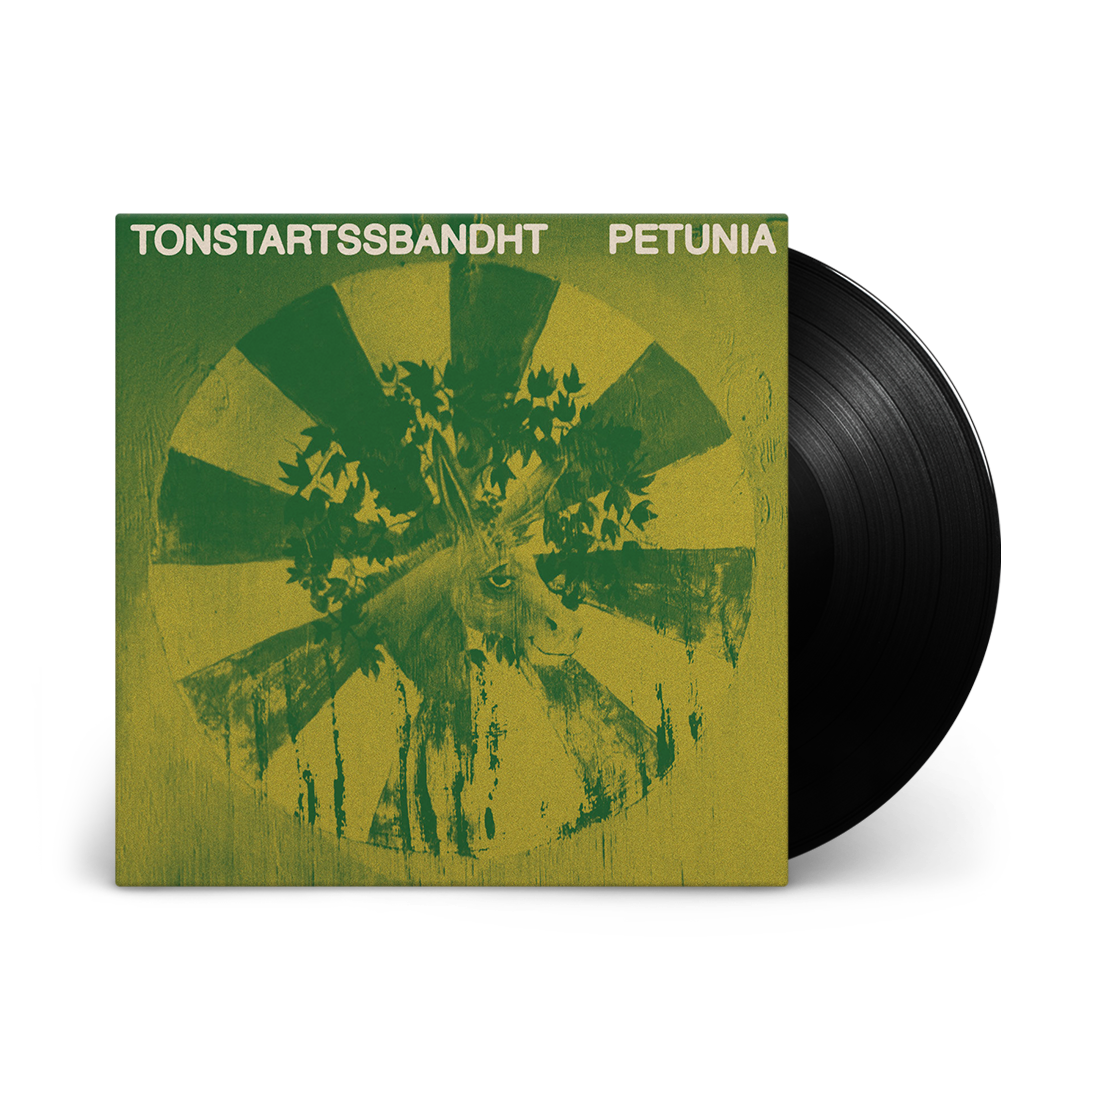 Tonstartssbandht - Petunia: Signed Exclusive Vinyl LP